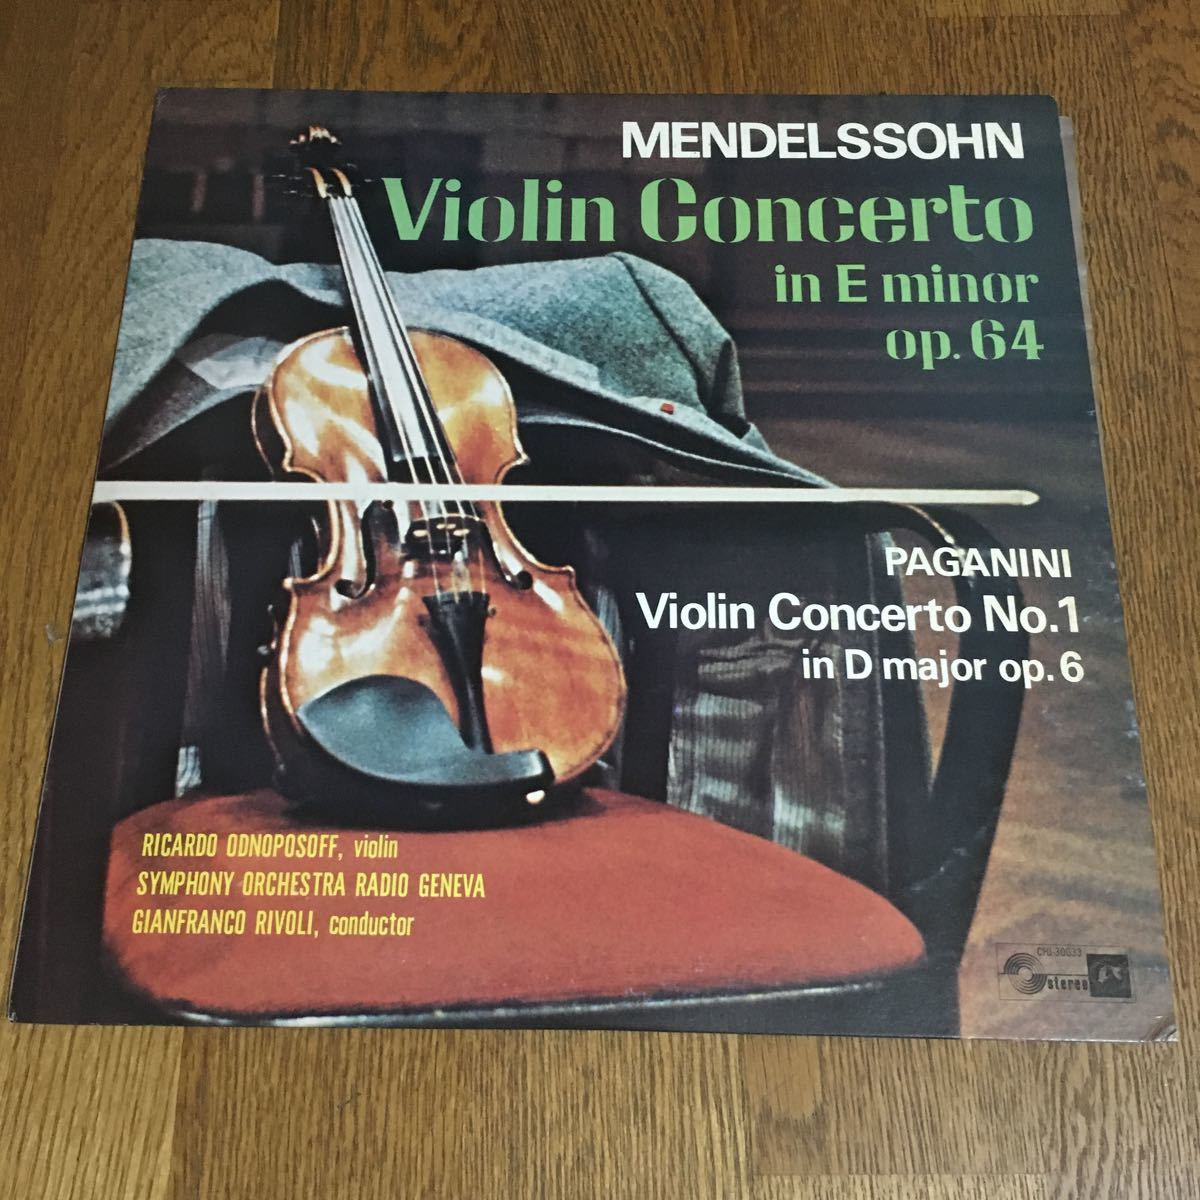 パガニーニ ヴァイオリン協奏曲第1番の値段と価格推移は 96件の売買情報を集計したパガニーニ ヴァイオリン協奏曲第1番の価格や価値の推移データを公開